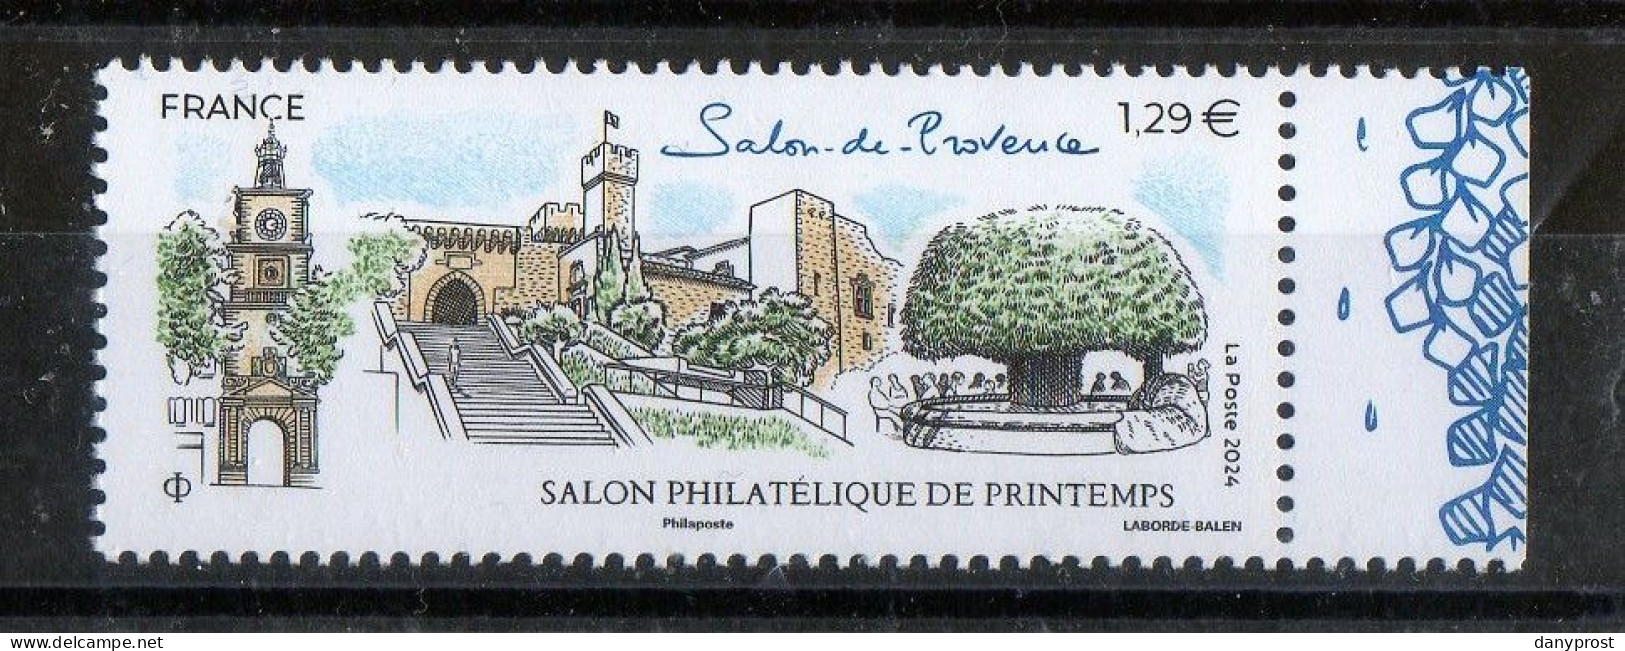 FR 2024 -" SALON PHILATELIQUE DE PRINTEMPS-Salon De Provence  " 1 T  LV 20g  à 1.29 € - 1 Marge Droit Illustrée - Neuf** - Neufs